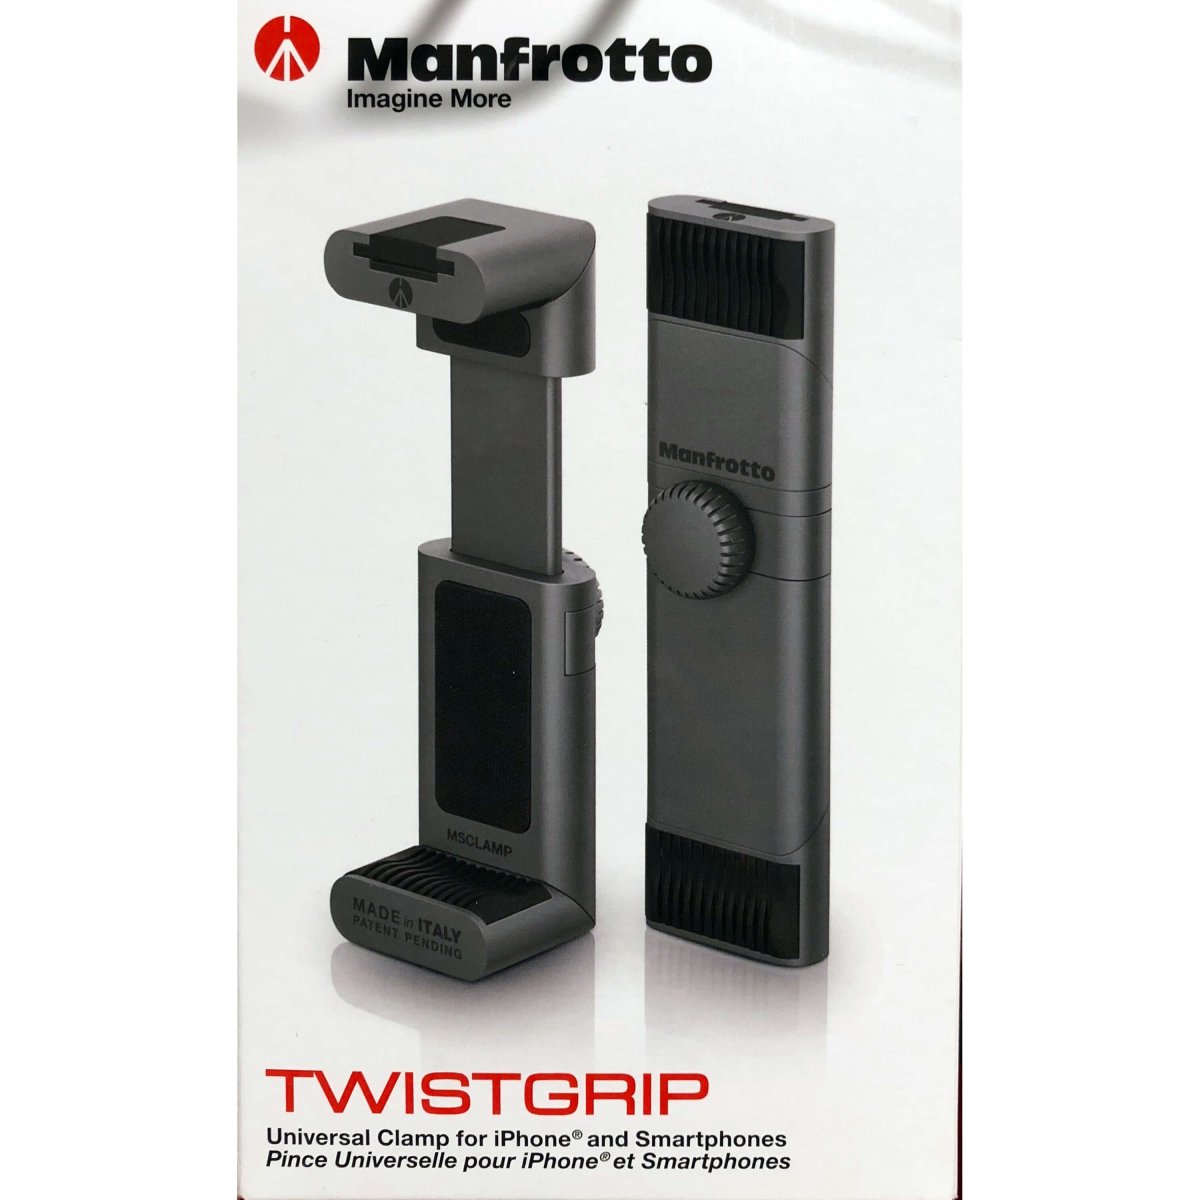 MANFROTTO Twist Grip stativbeslag til smartphone